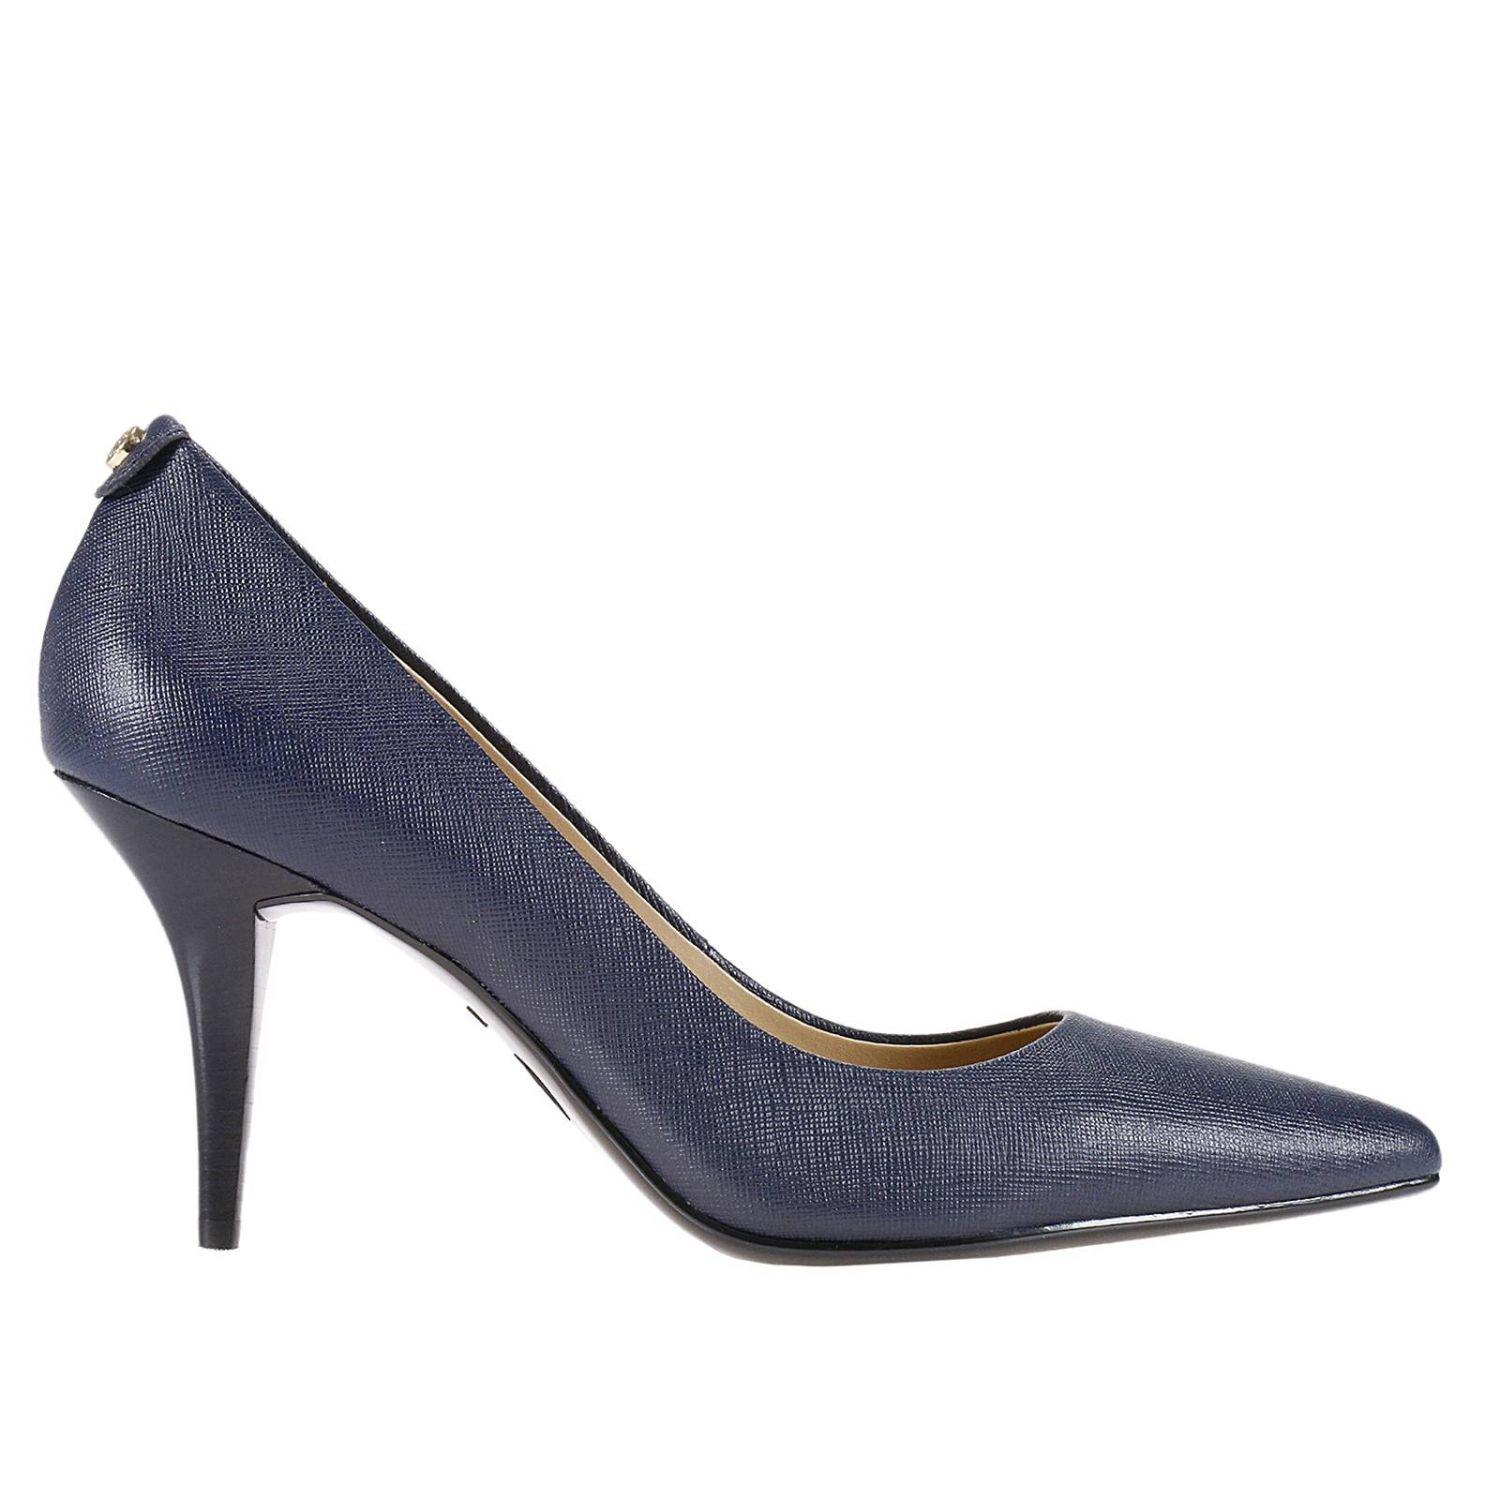 Lyst - Michael Michael Kors Pumps Shoes Women in Blue